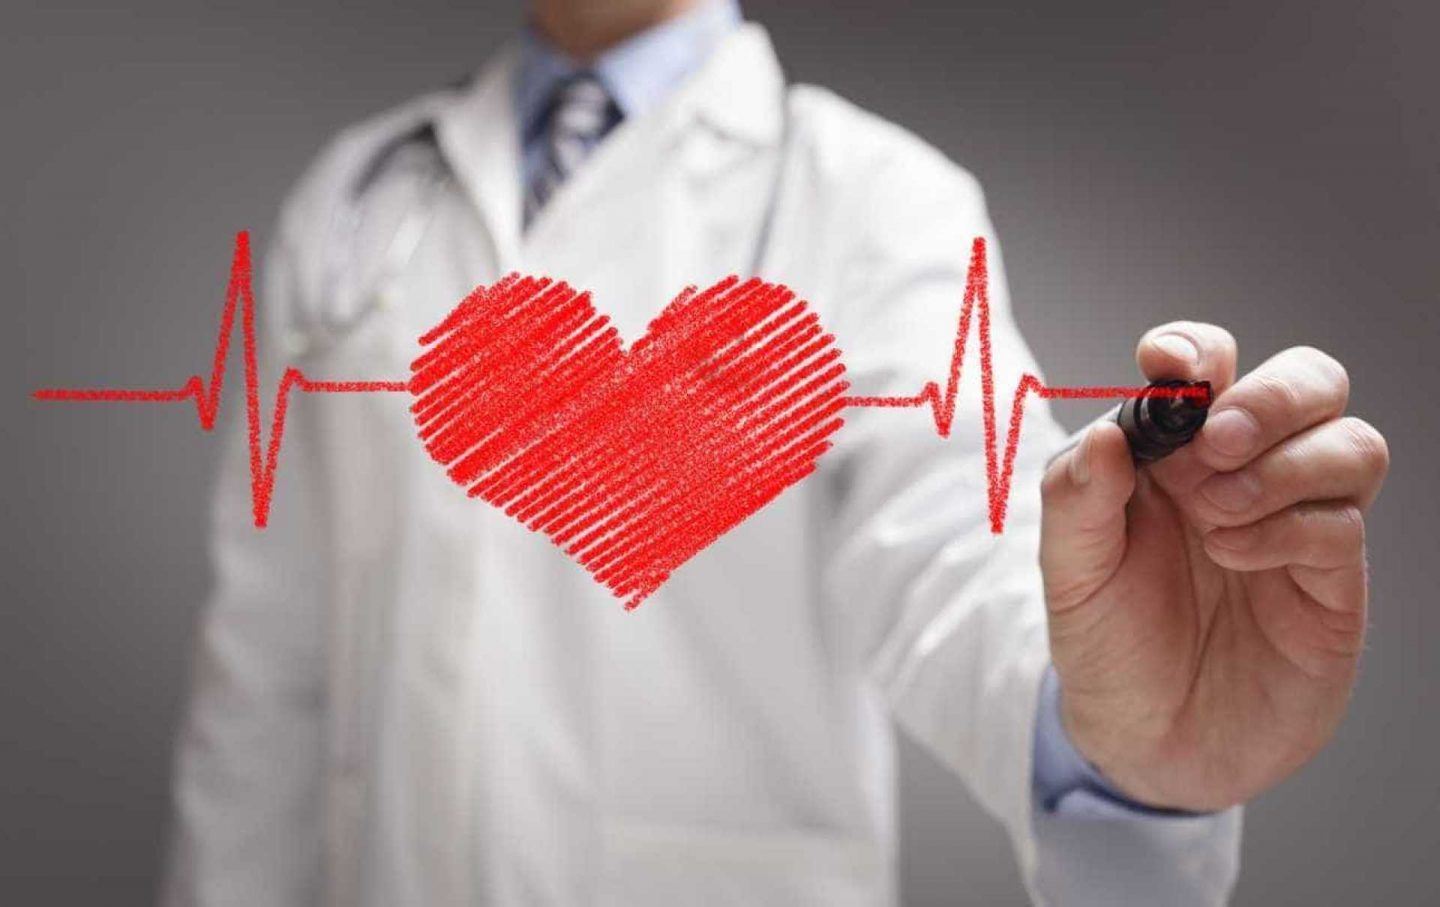 اكتشاف طبي جديد ينقذ آلاف المصابين بالنوبات القلبية